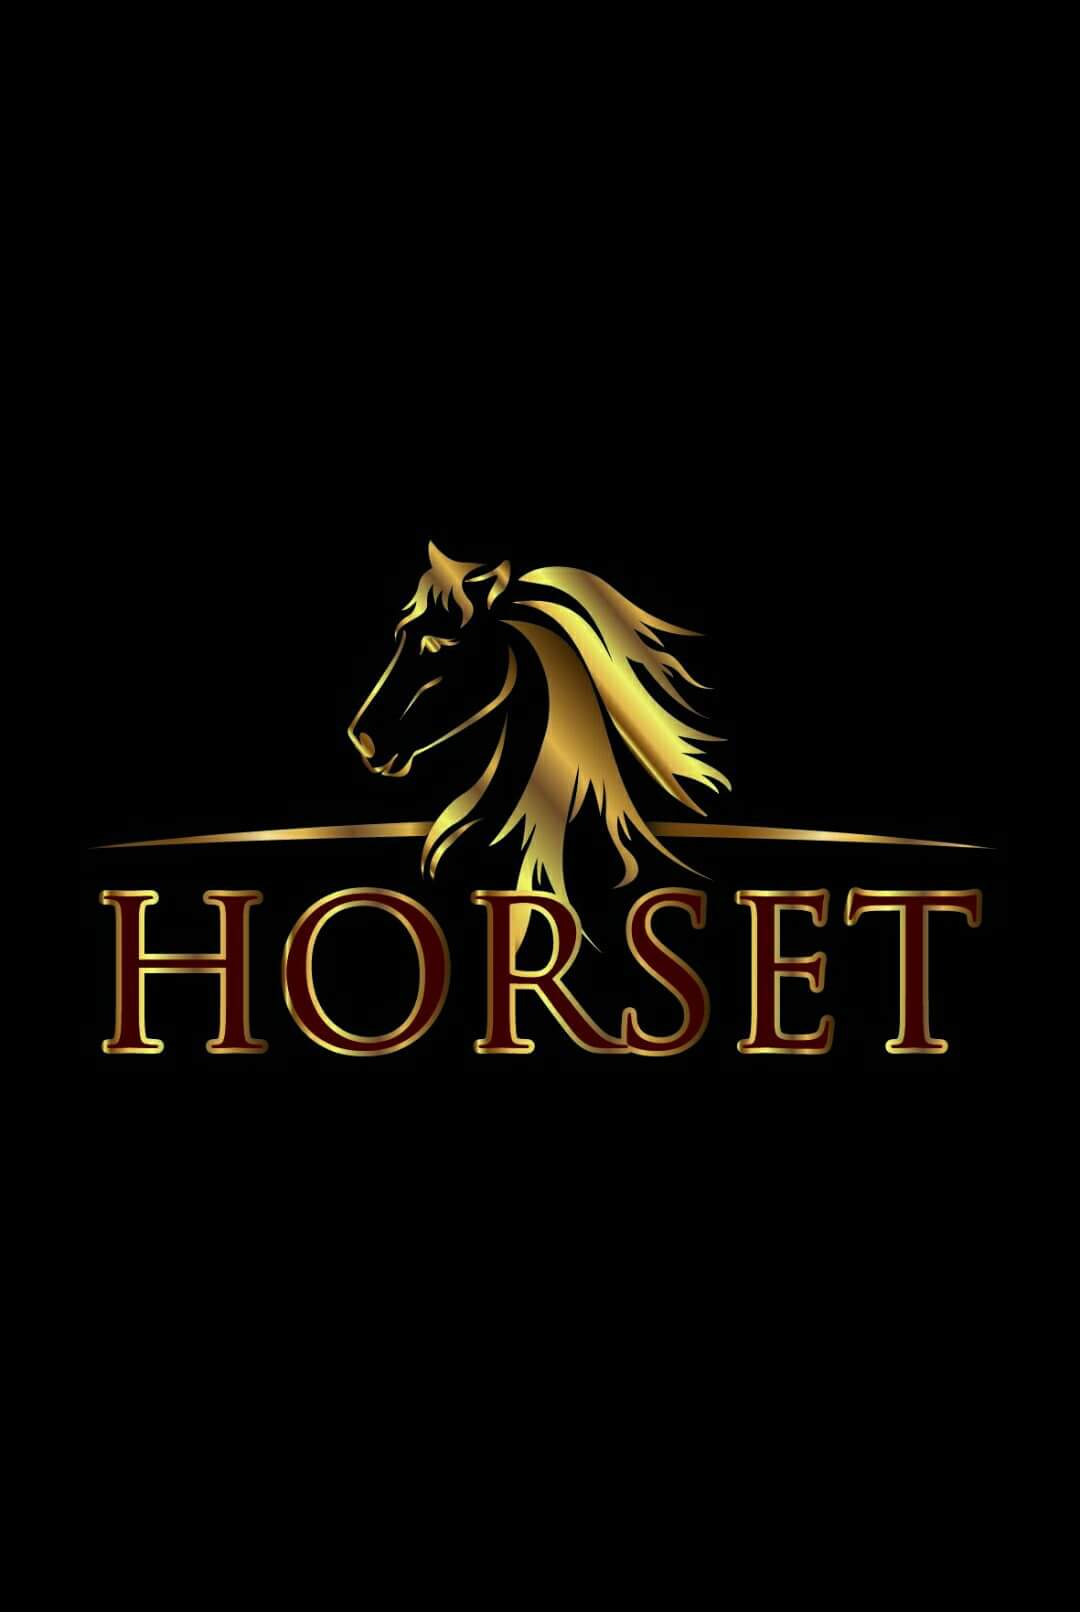 HORSET